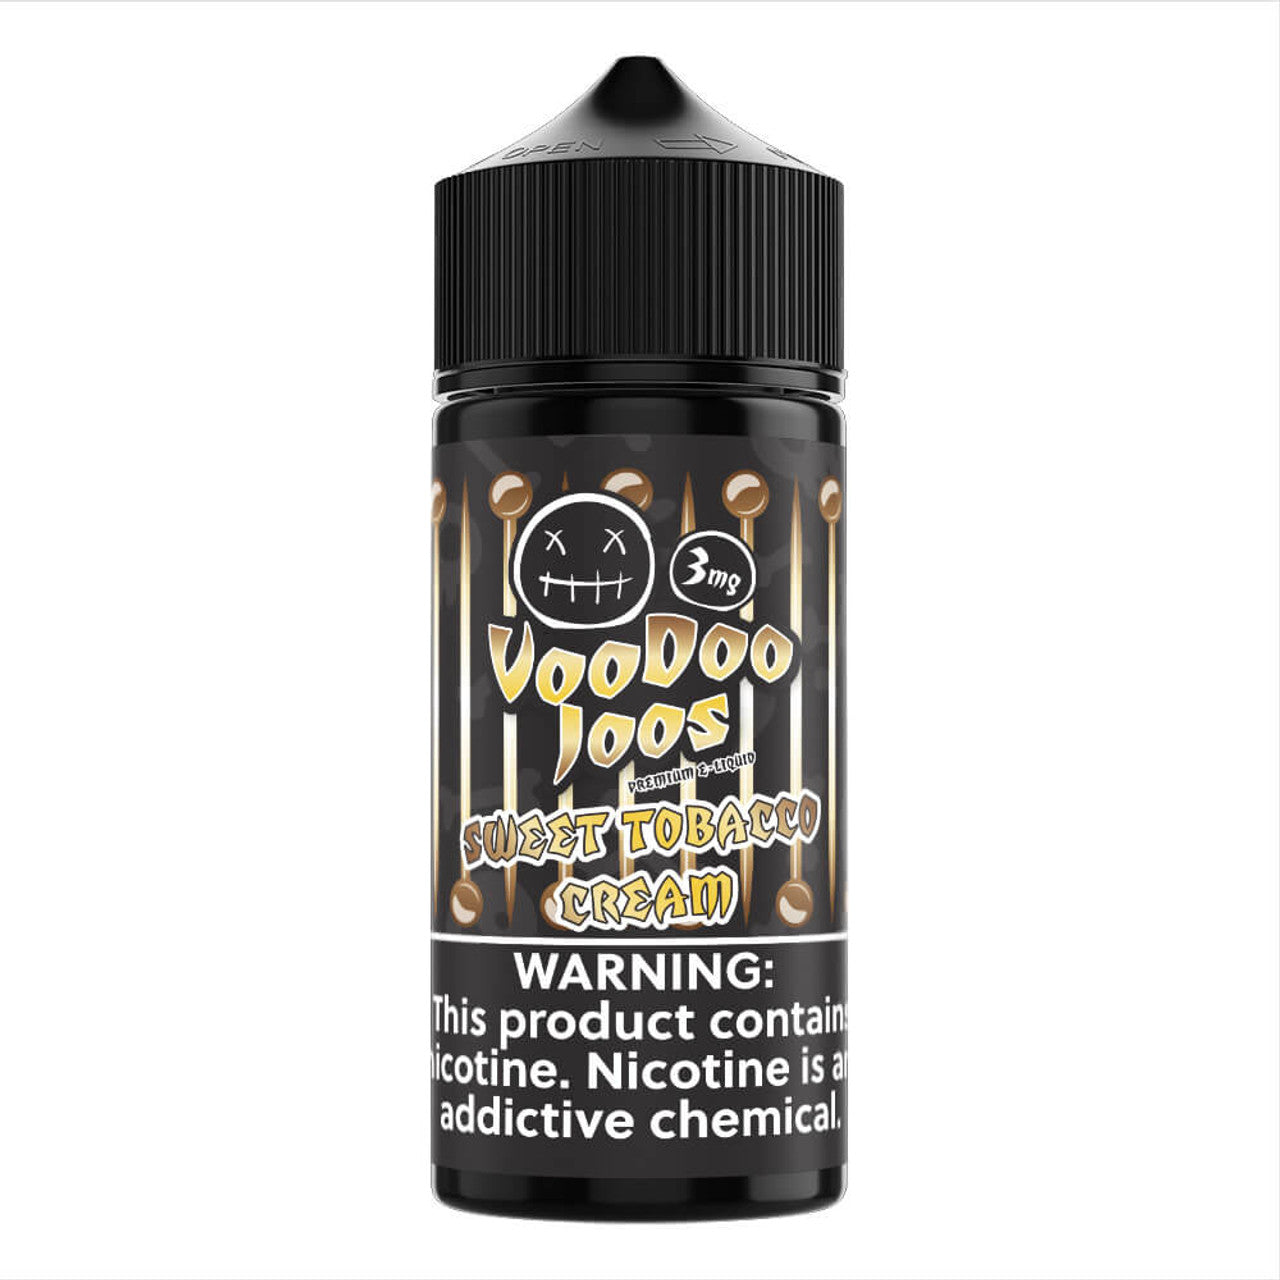 VooDoo Joos Sweet Tobacco Cream 3mg.